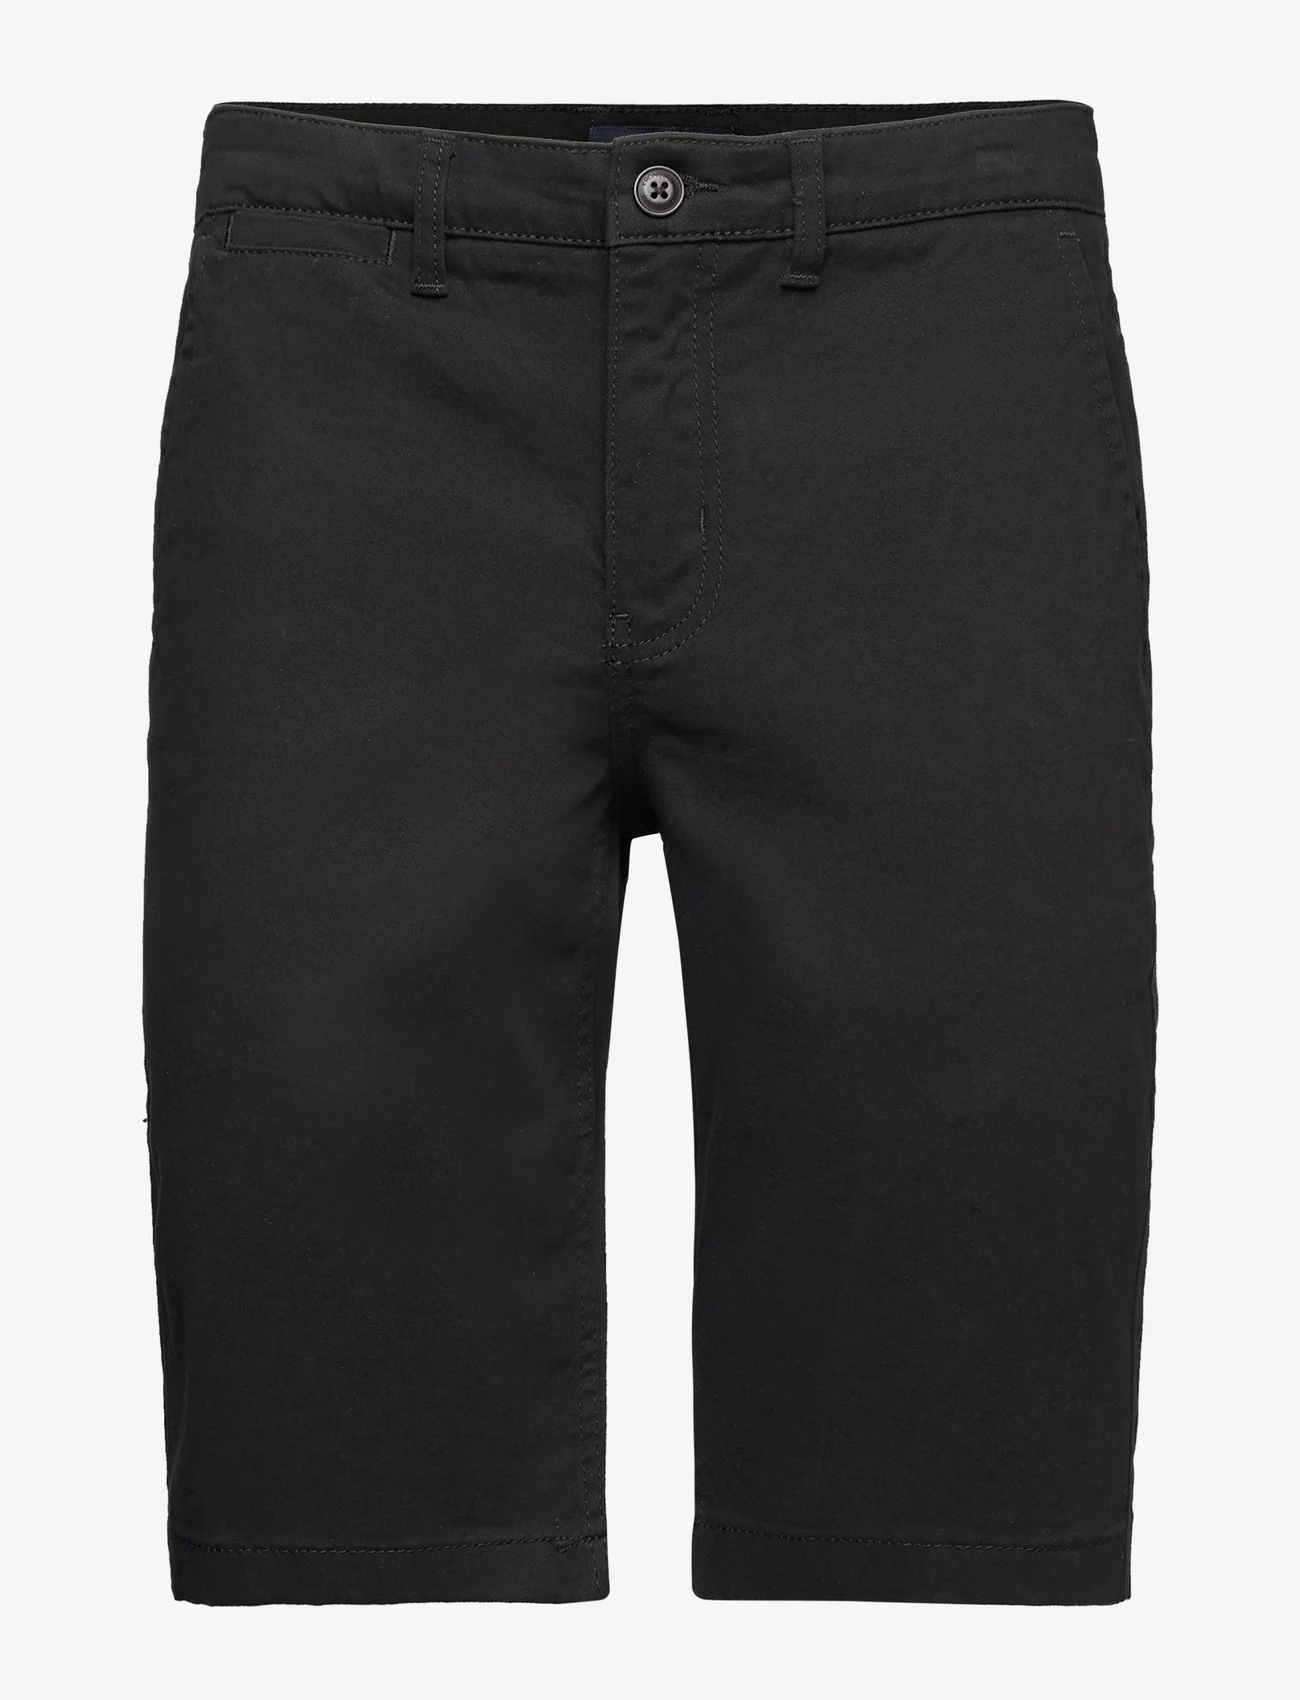 Kronstadt - Jonas Twill shorts - chino lühikesed püksid - black - 0